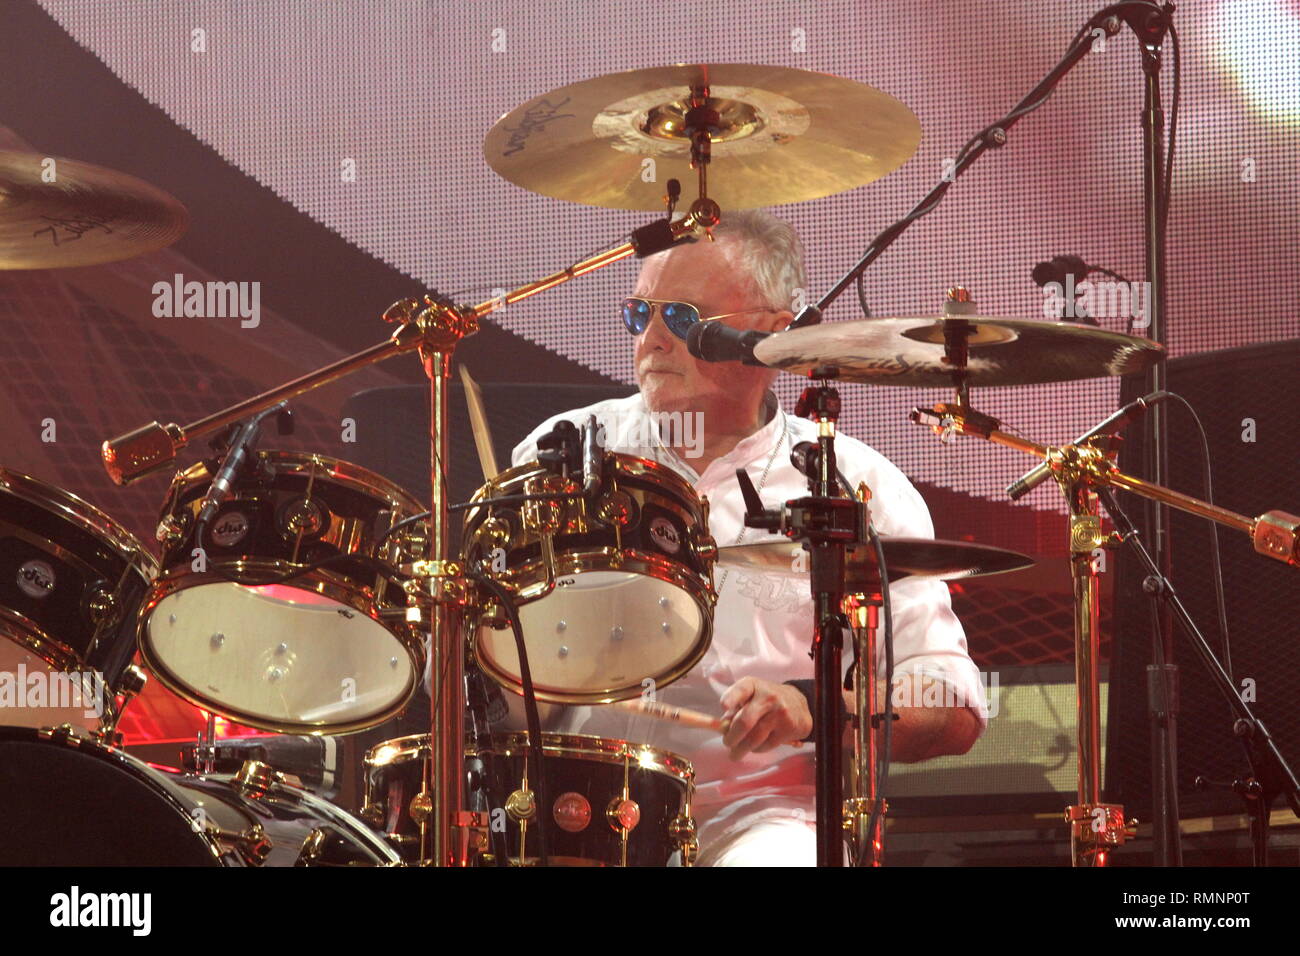 Il batterista e cantante Roger Taylor della rock band Queen è mostrato esibirsi sul palco durante un 'live' aspetto di concerto. Foto Stock